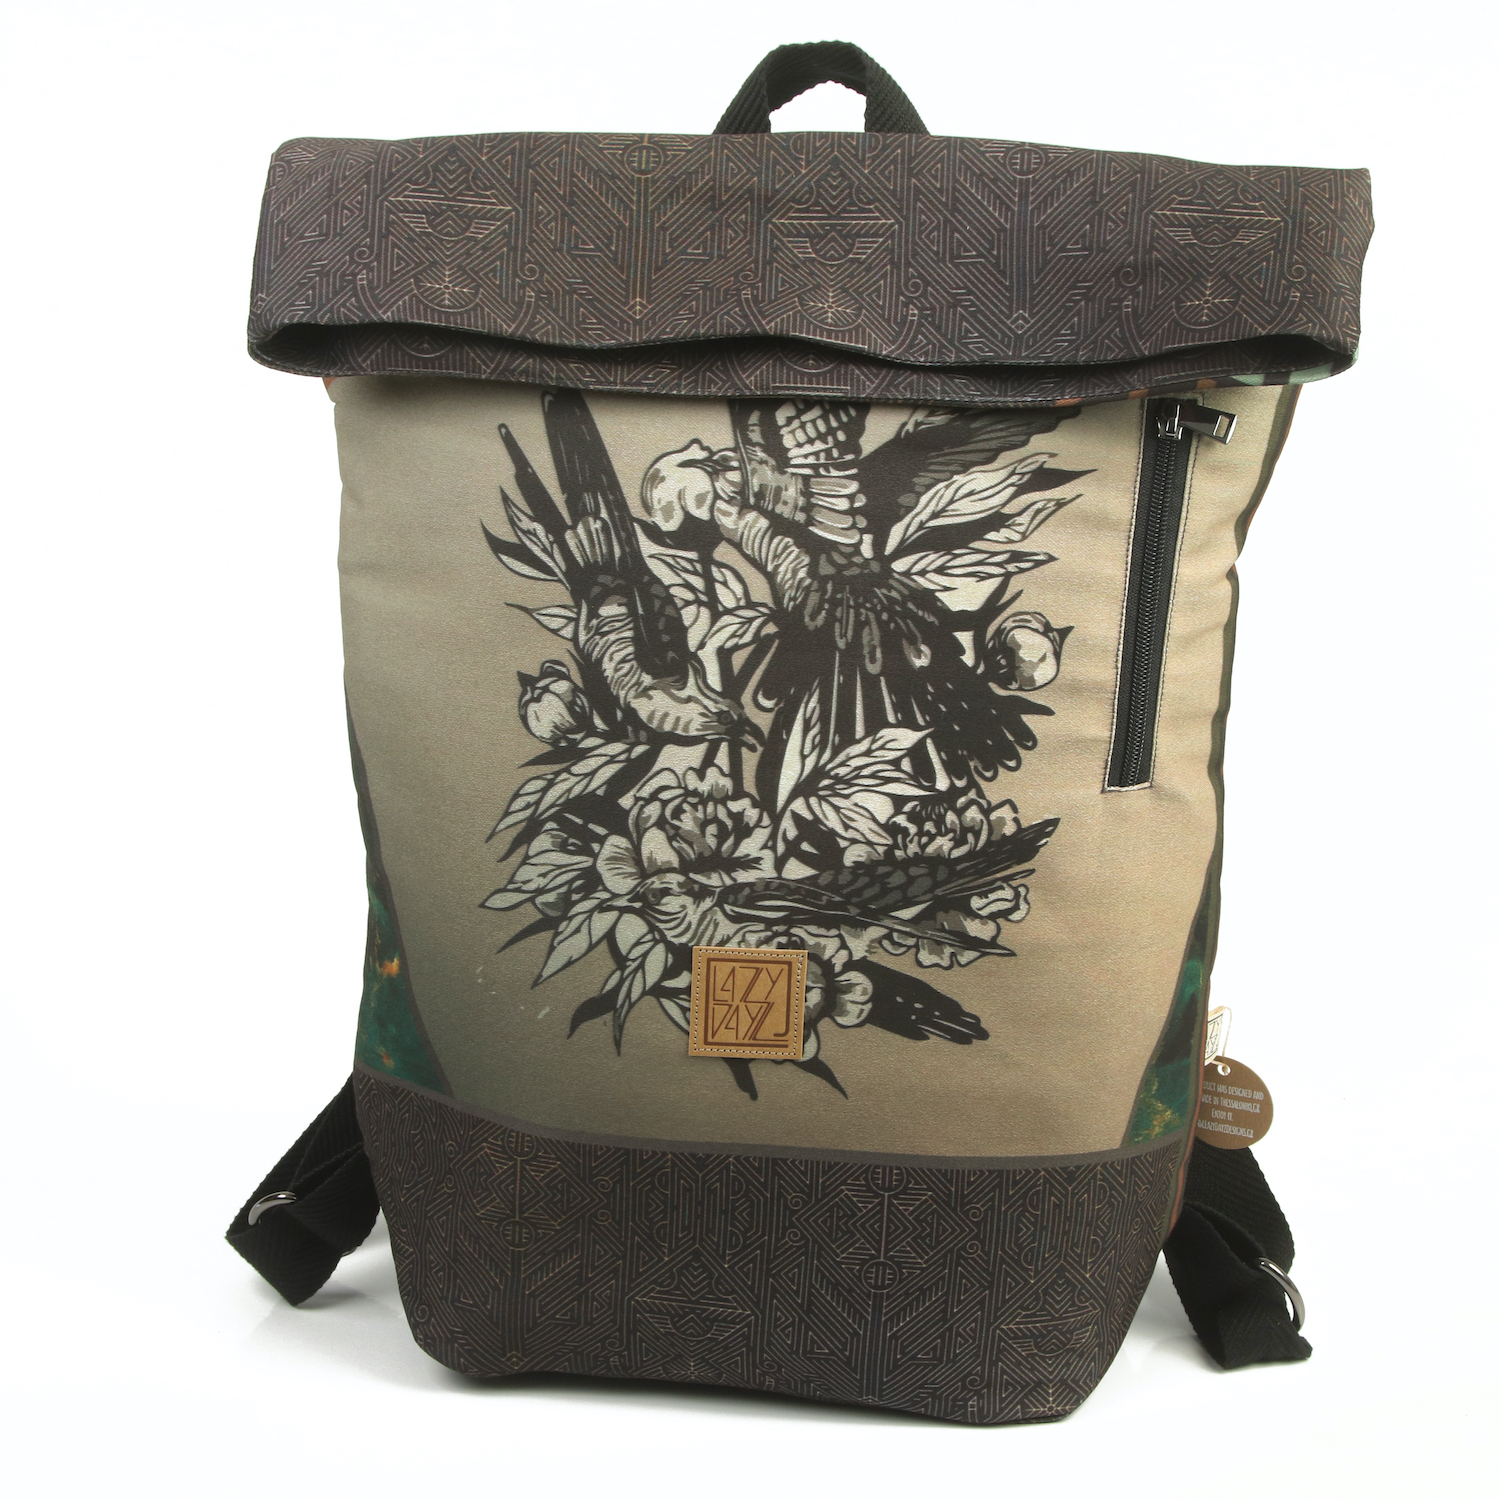 LazyDayz-Designs-Backpack-γυναικείος-σάκος-πλάτης-χειροποίητος bb0804